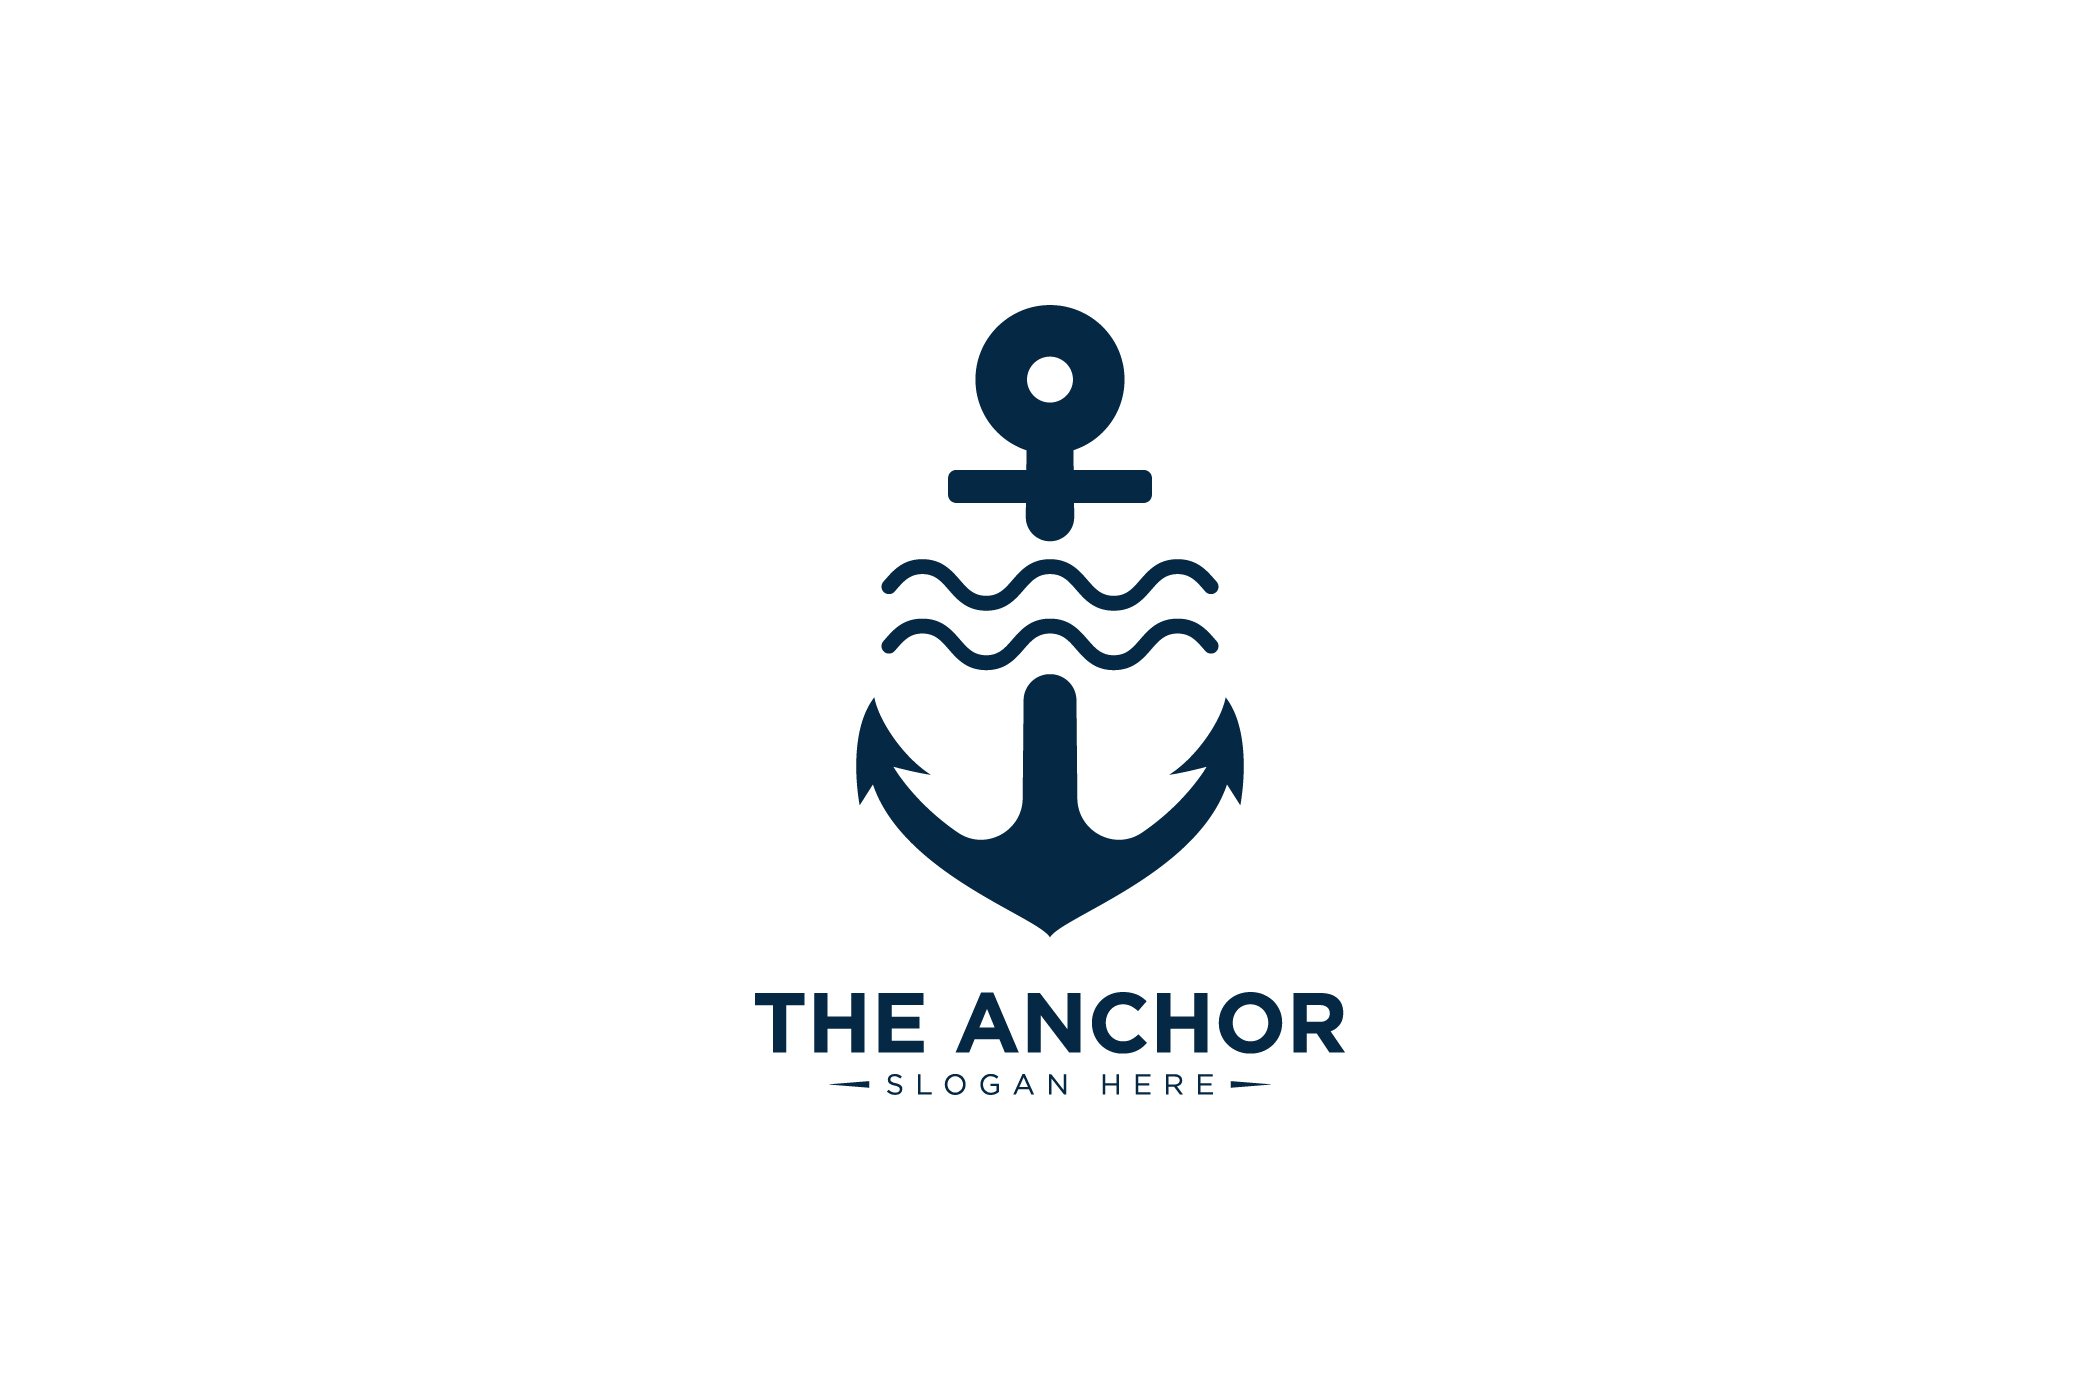 Cool navy logo with a blue ship anchor.